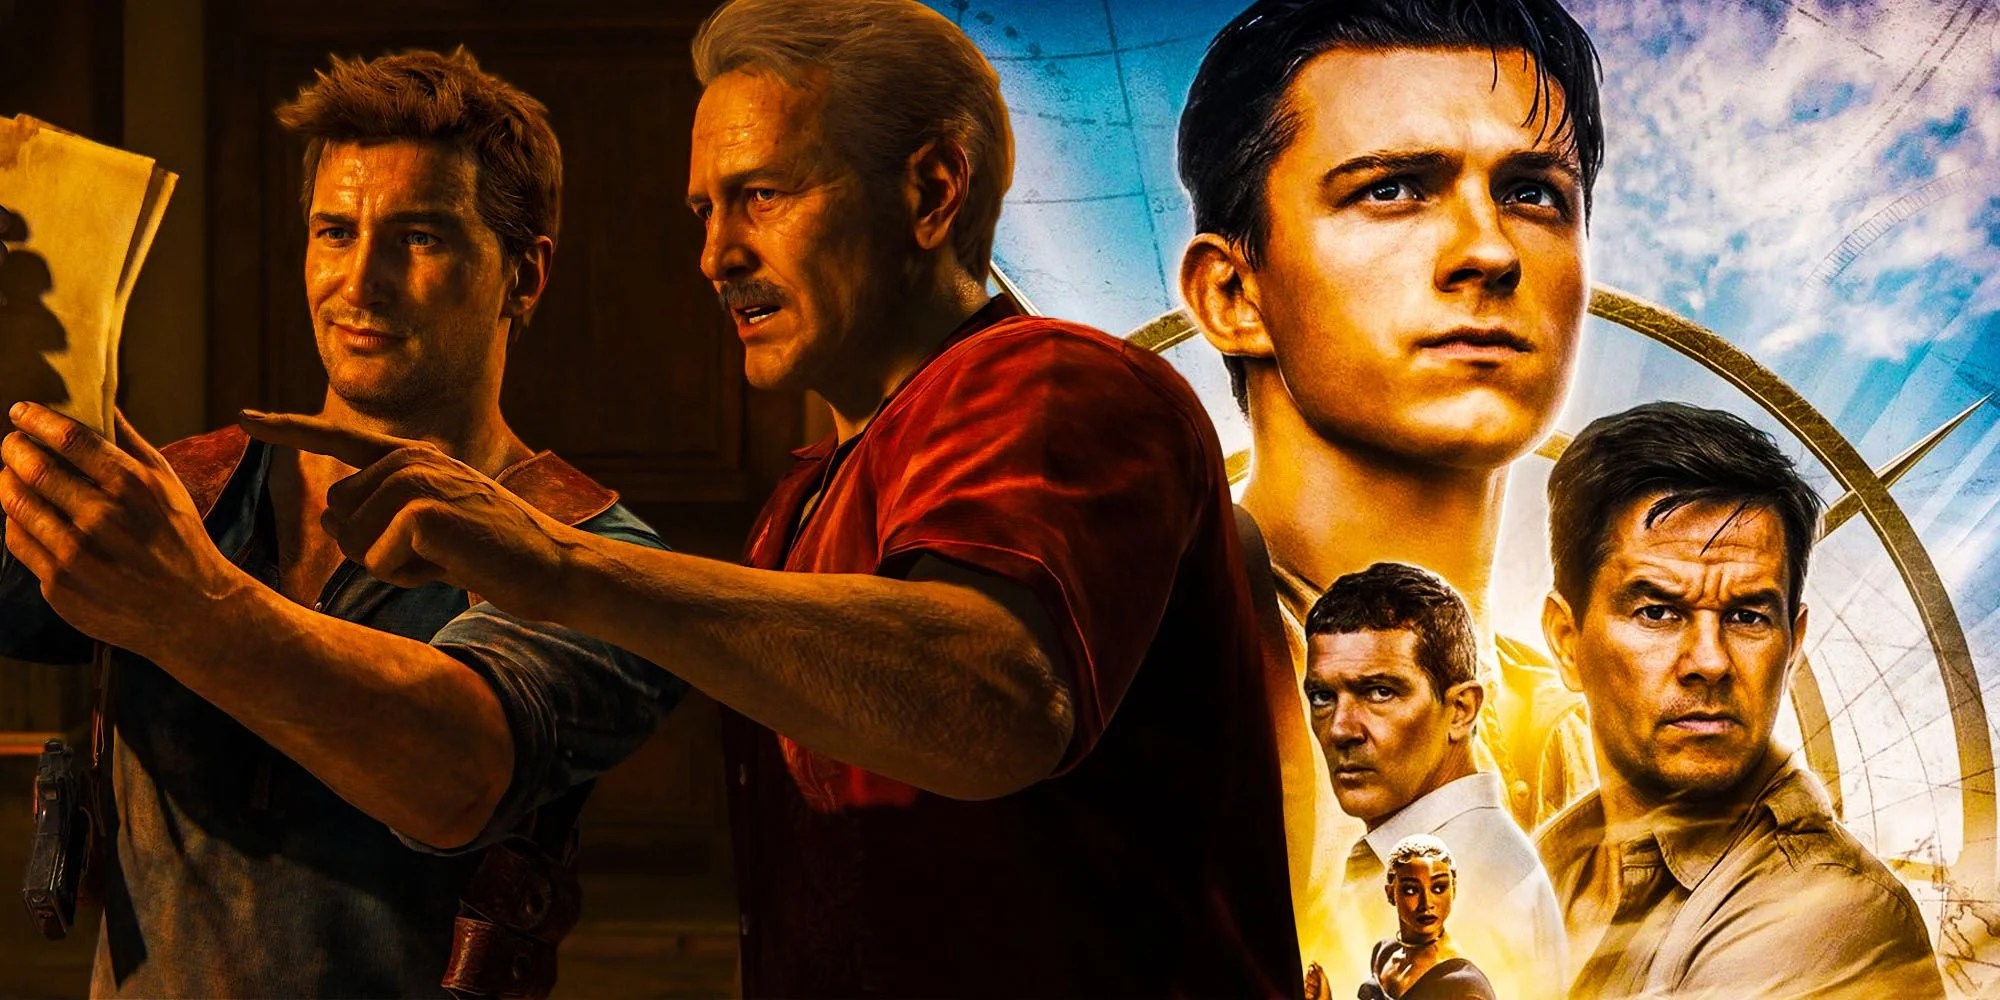 Uncharted' já arrecadou quase US$ 350 milhões nas bilheterias mundiais -  CinePOP